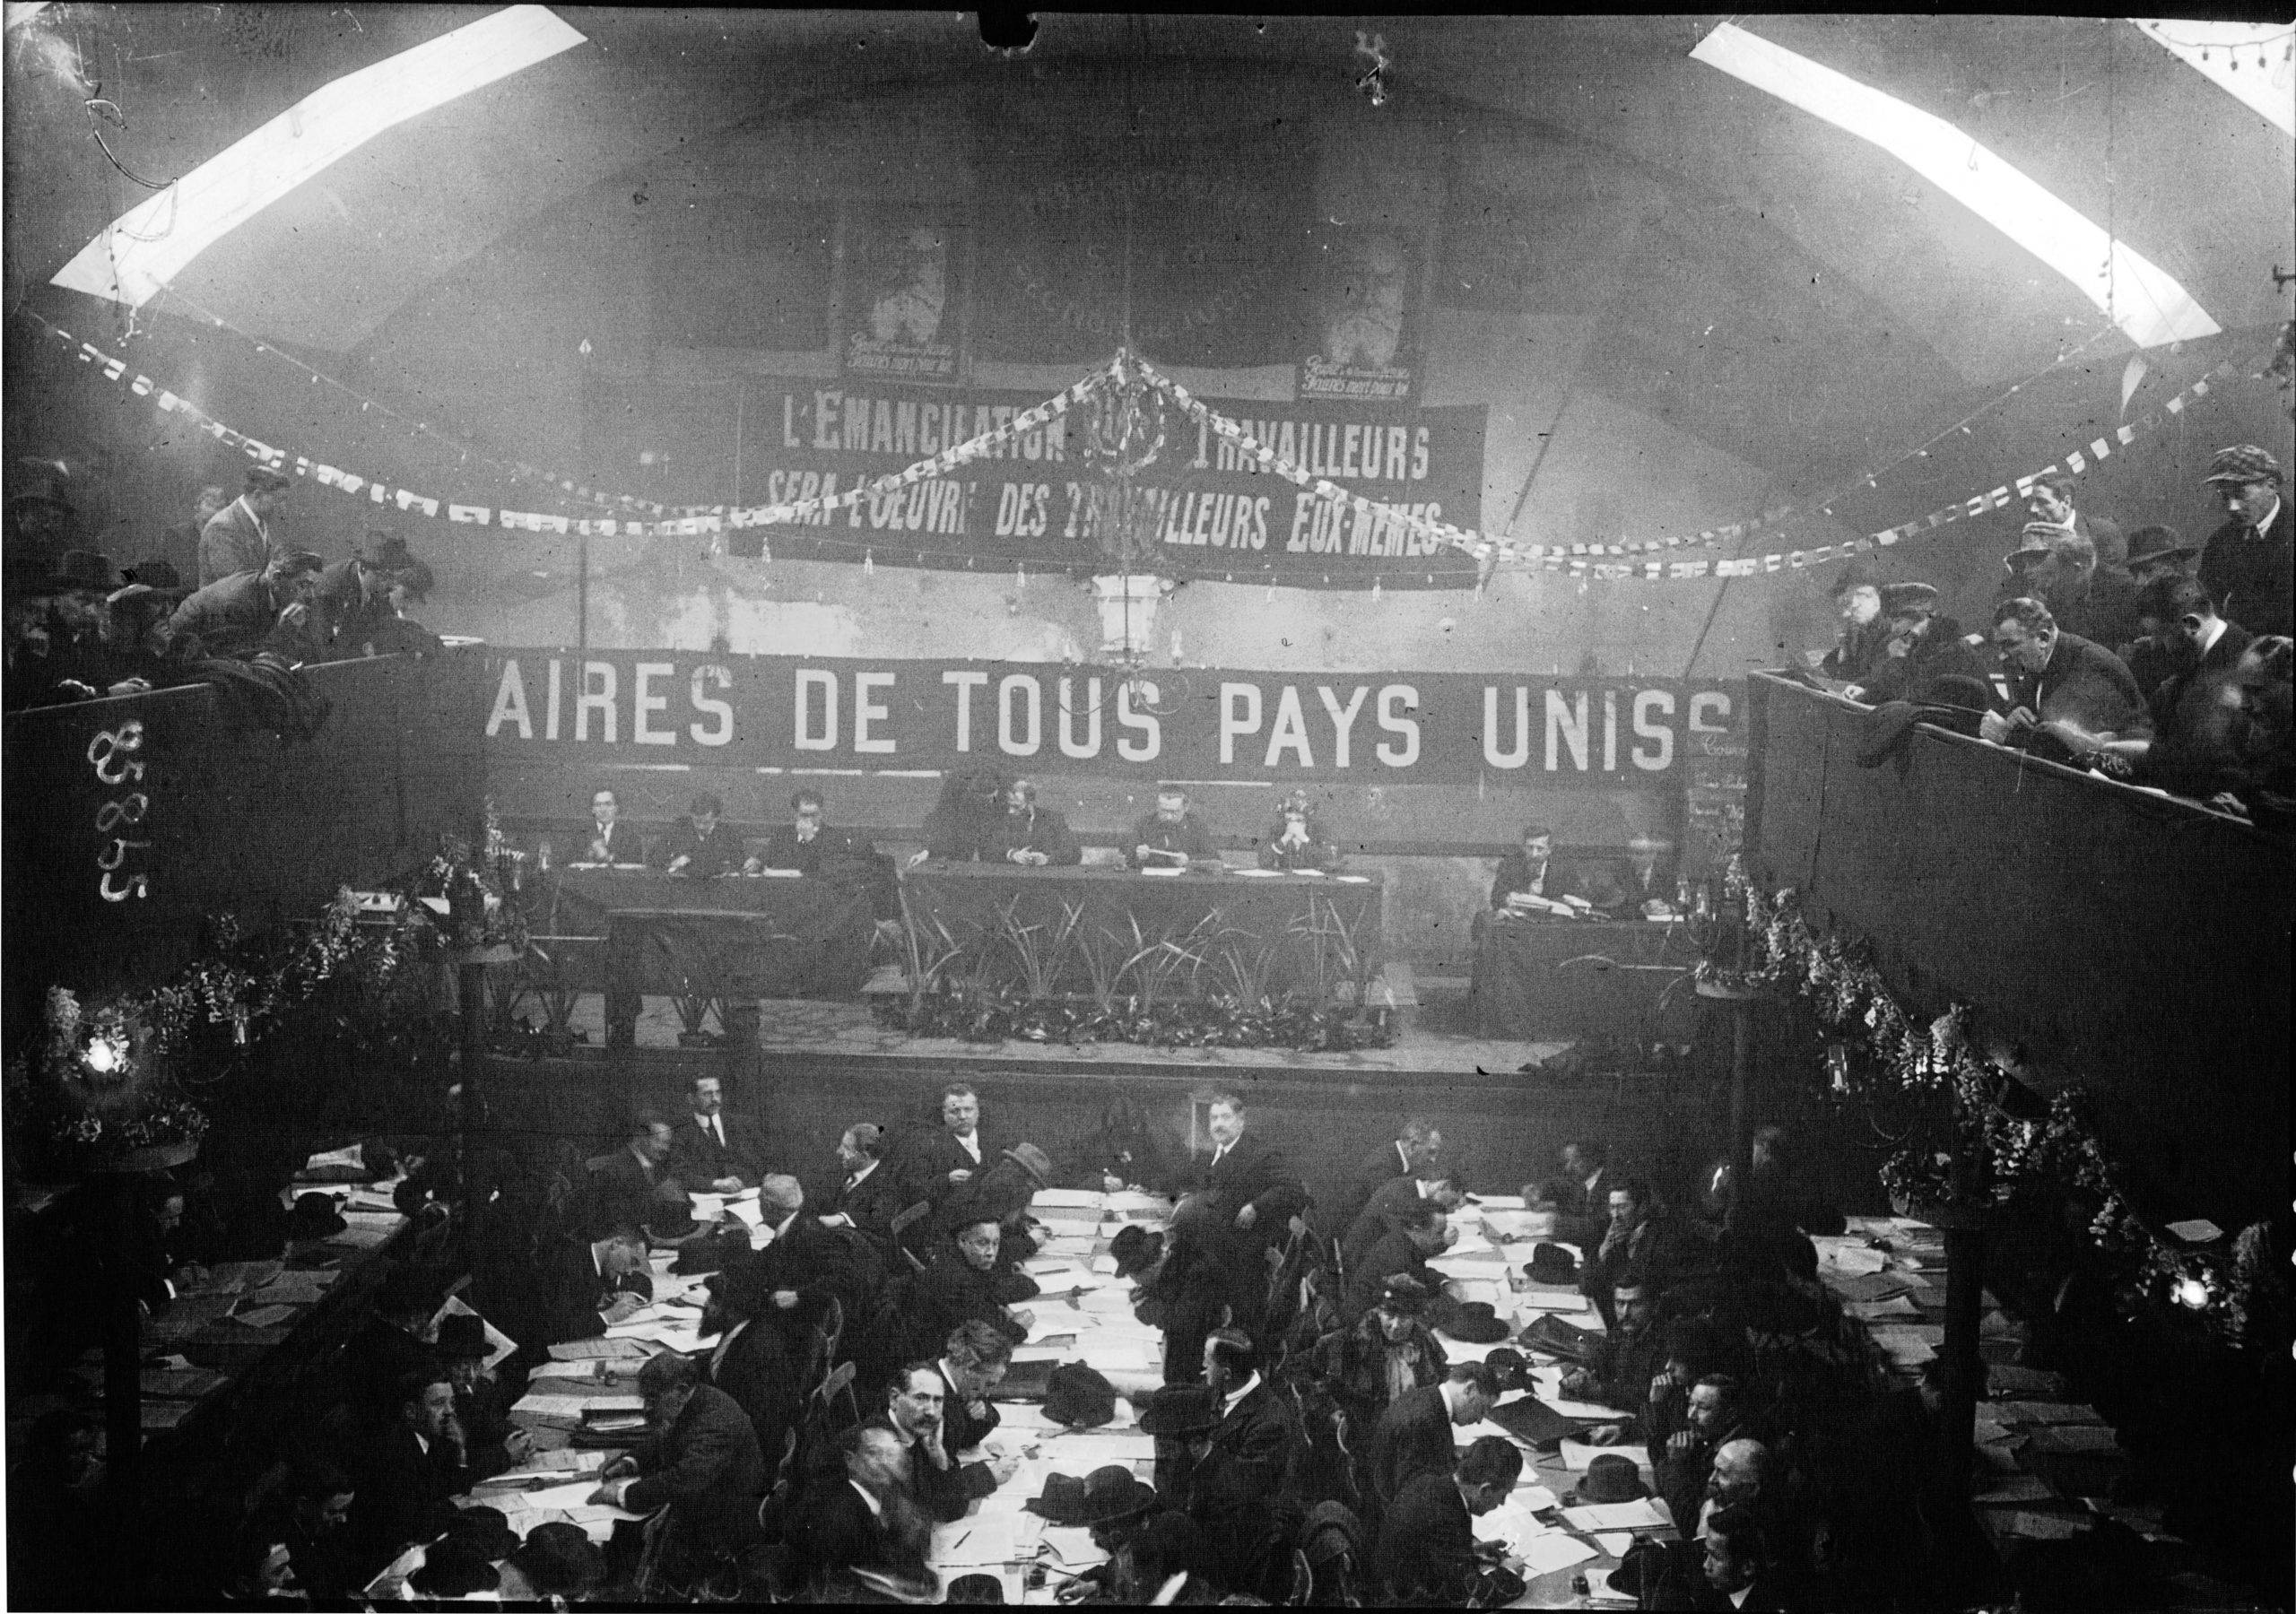 Vue générale de la salle au Congrès de Tours avec en arrière-plan la grande banderole « Prolétaires de tous les pays, unissez-vous ! », et deux portraits de Jean Jaurès